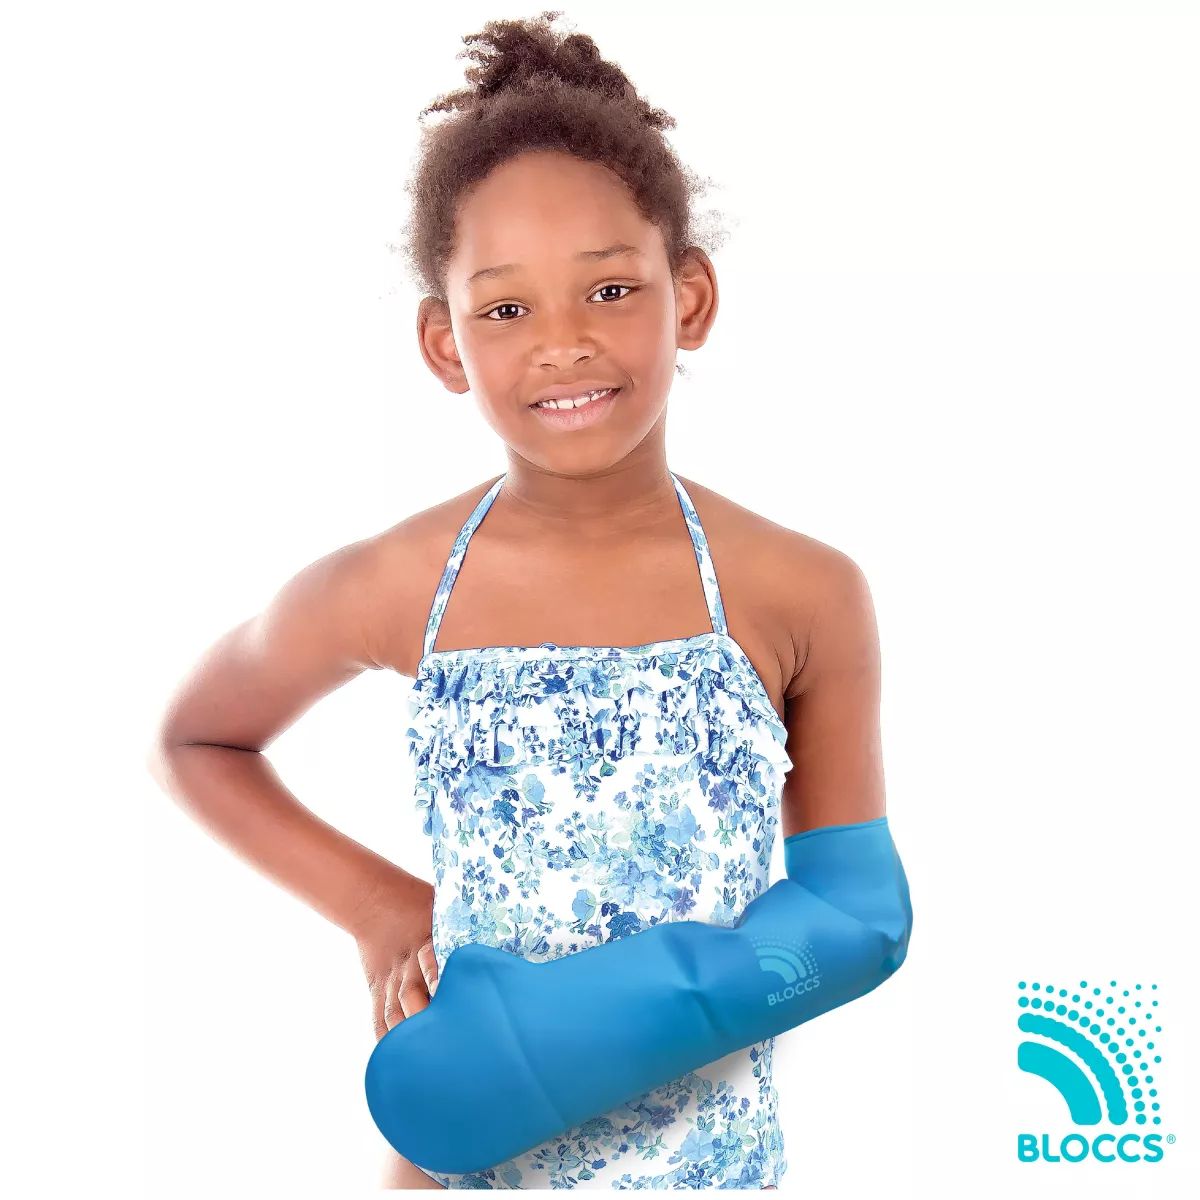 Protectie Bloccs pentru bandaj si ghips pentru mana copil, marime L, circumferinta mainii 20-26cm, lungime protectie 53cm